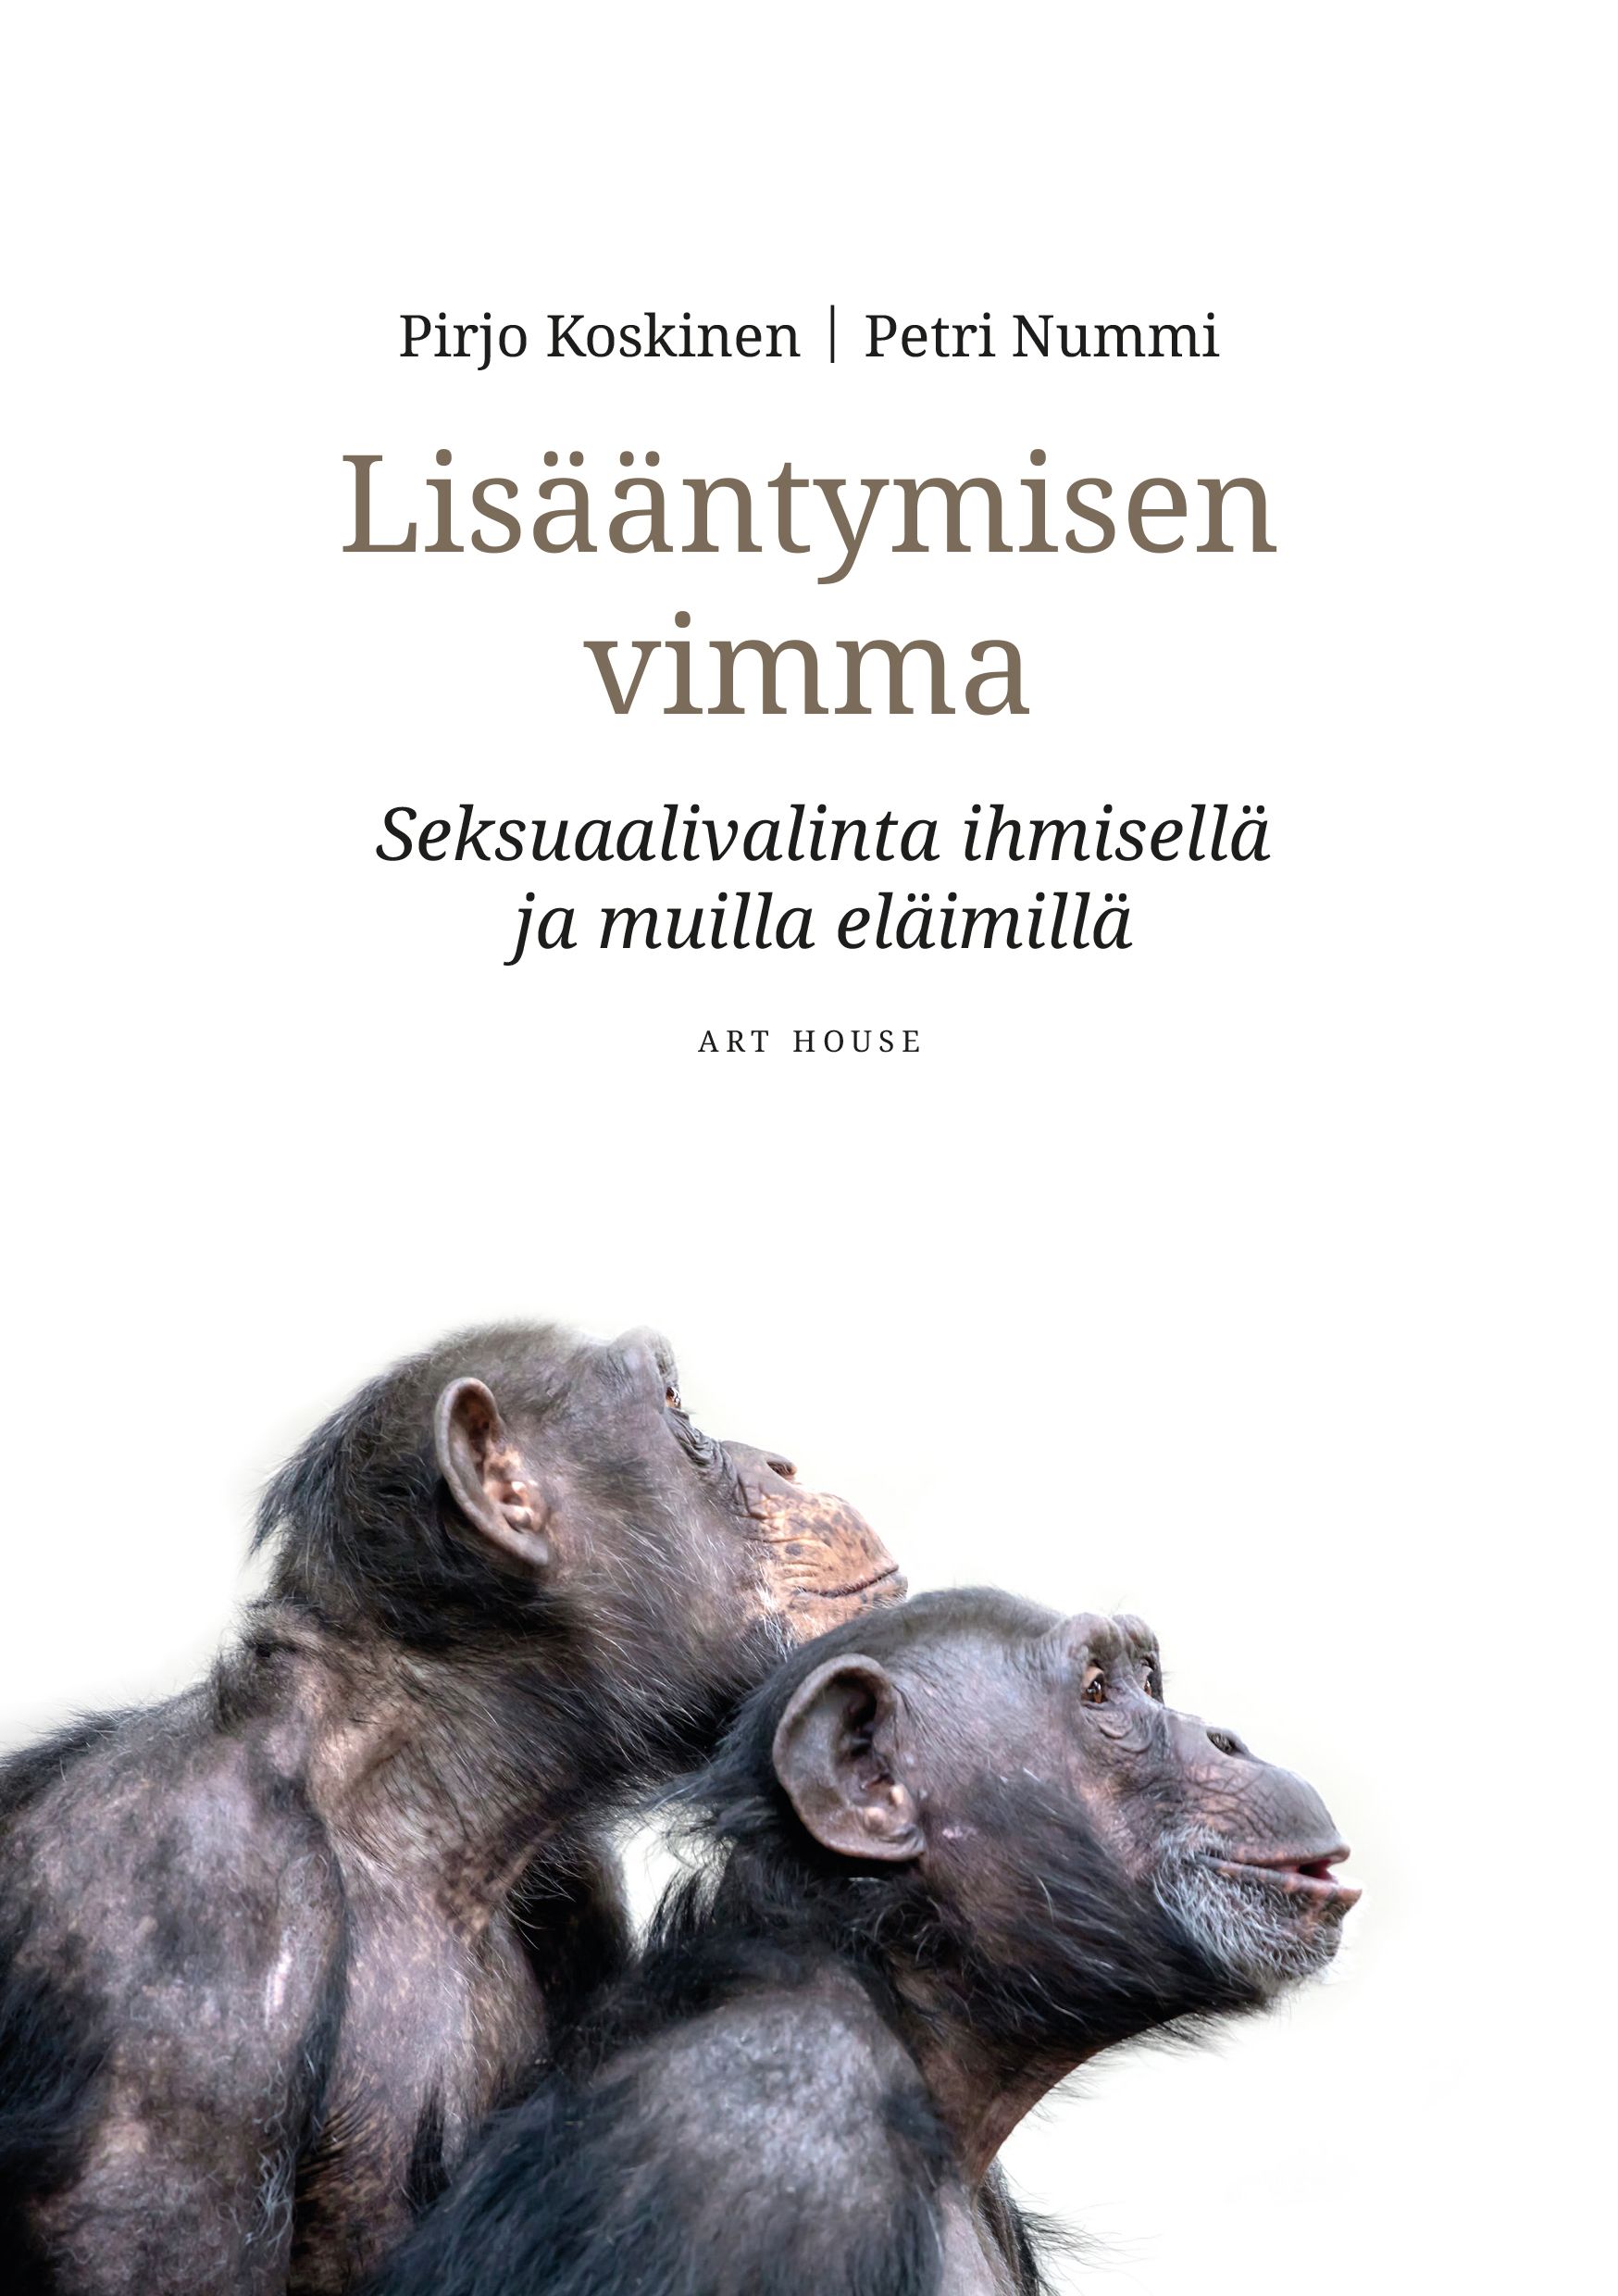 Pirjo Koskinen & Petri Nummi : Lisääntymisen vimma